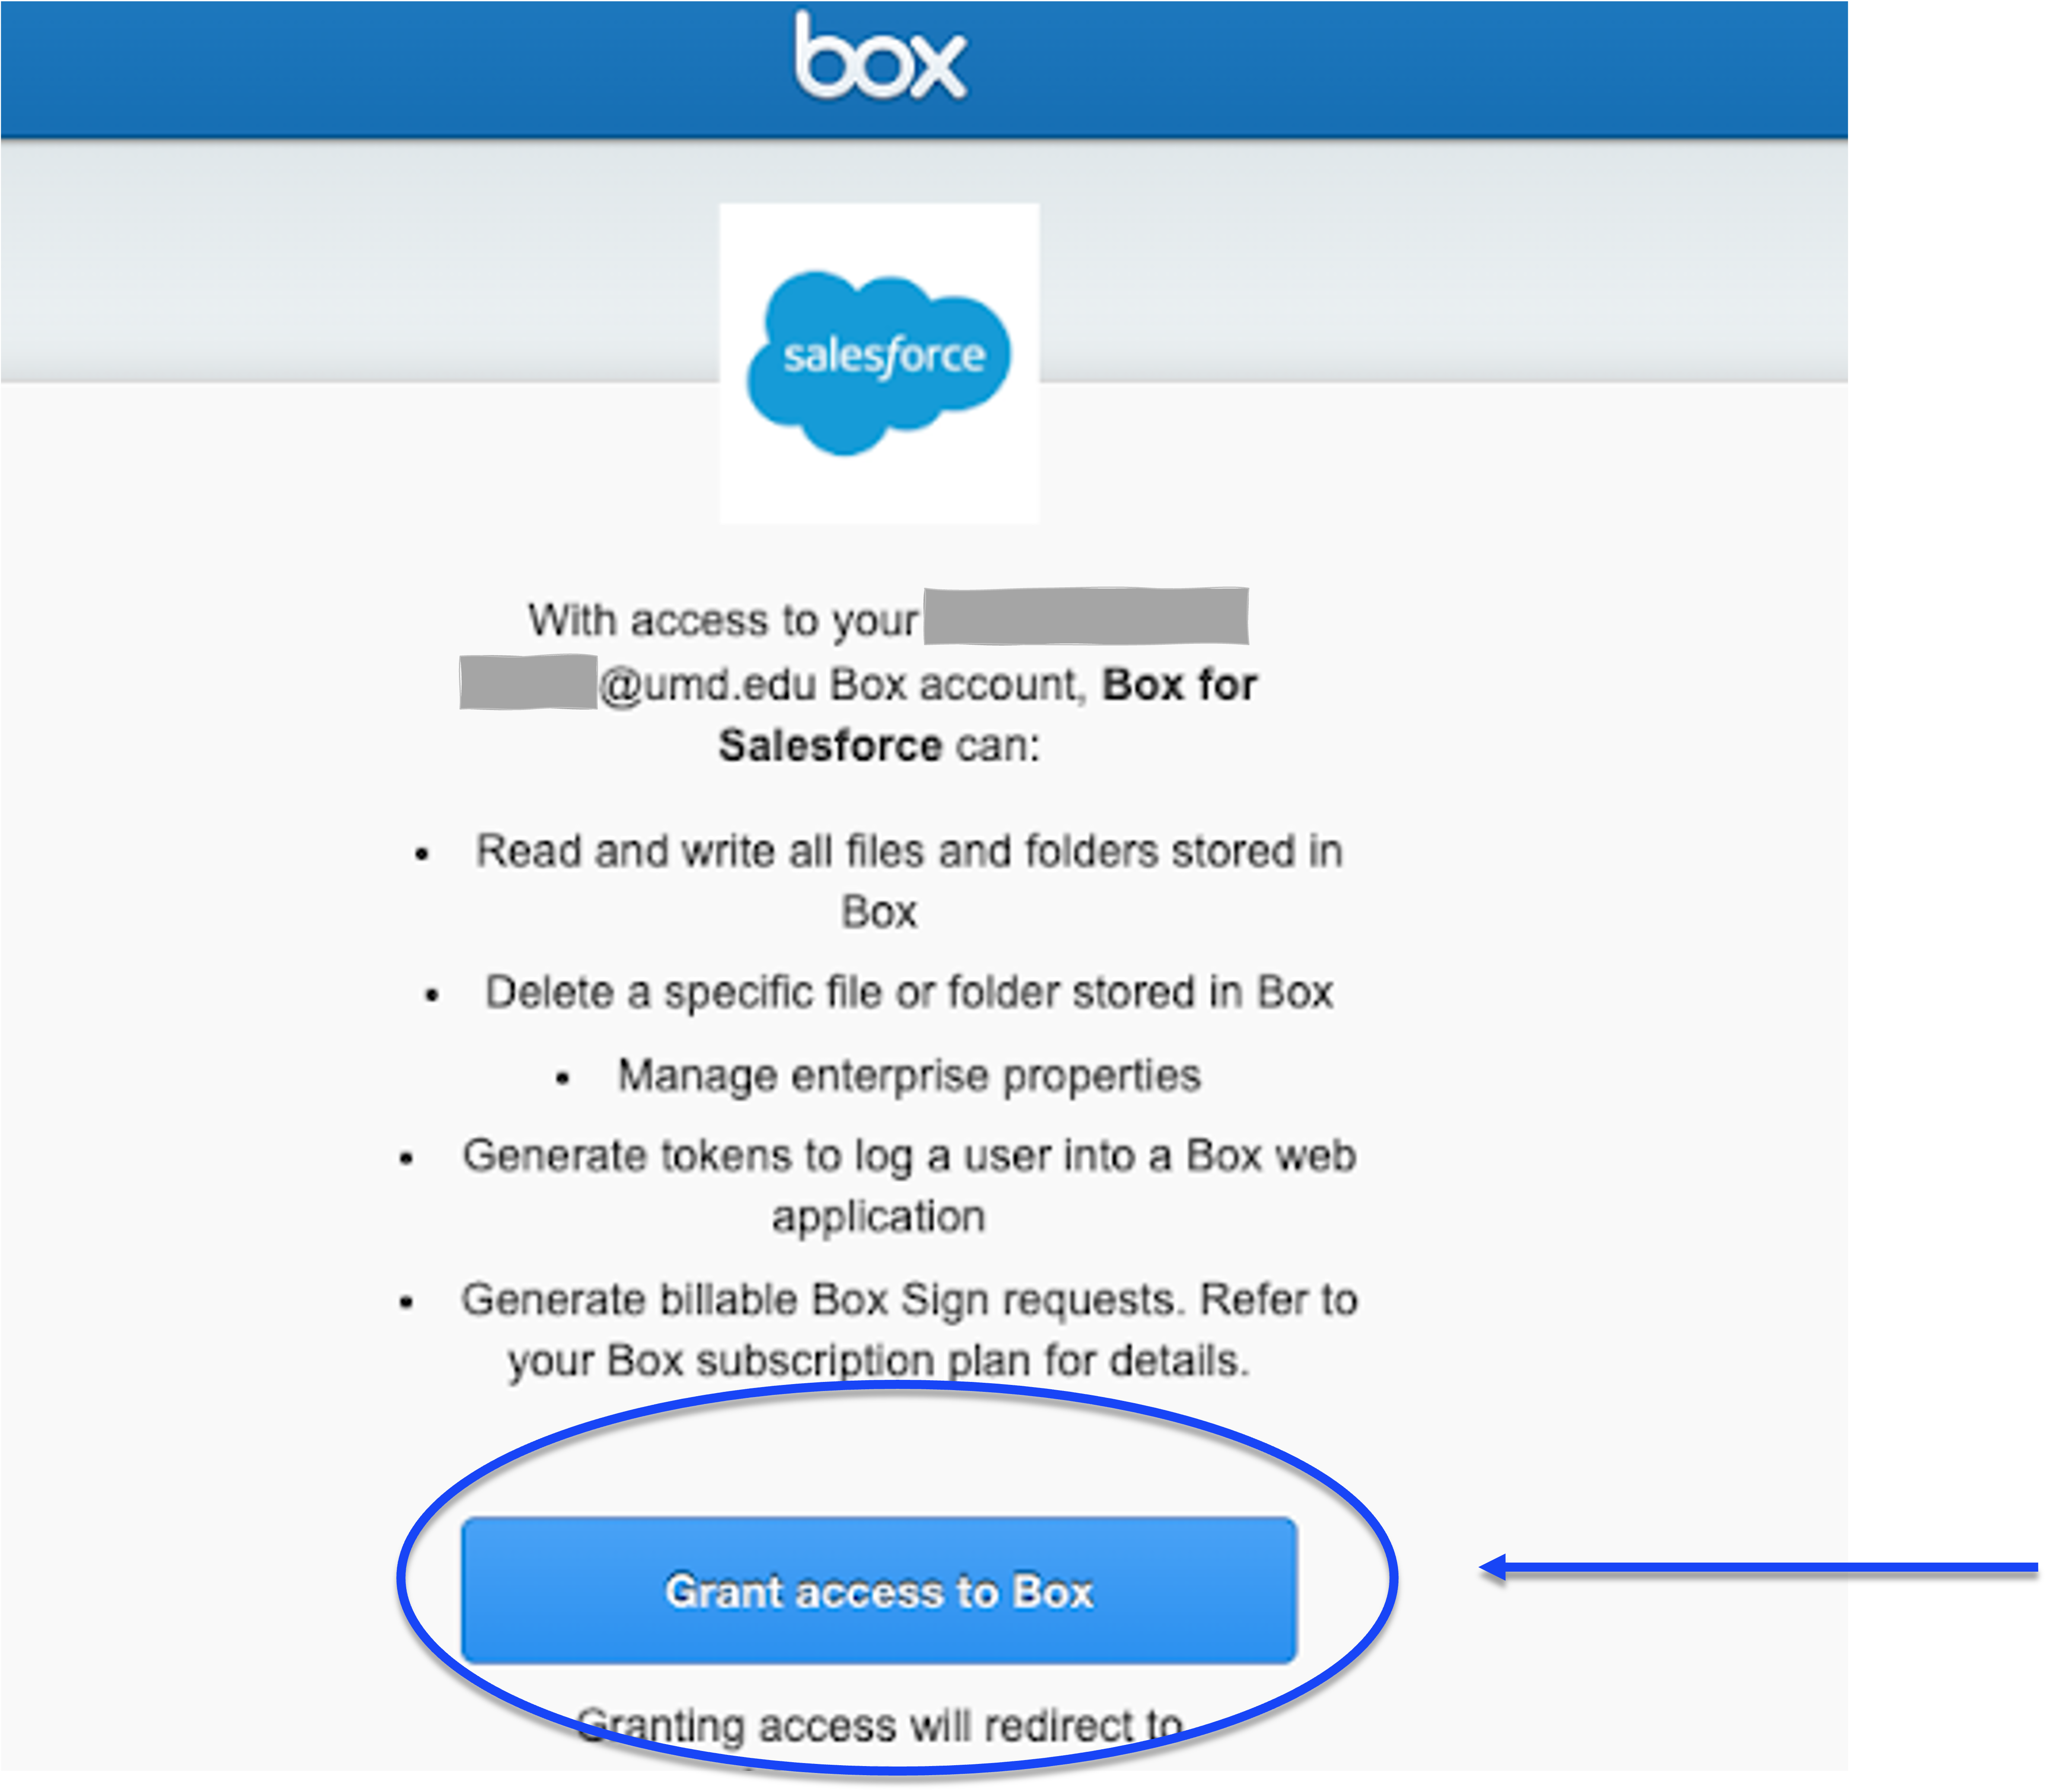 Grant Access to Box